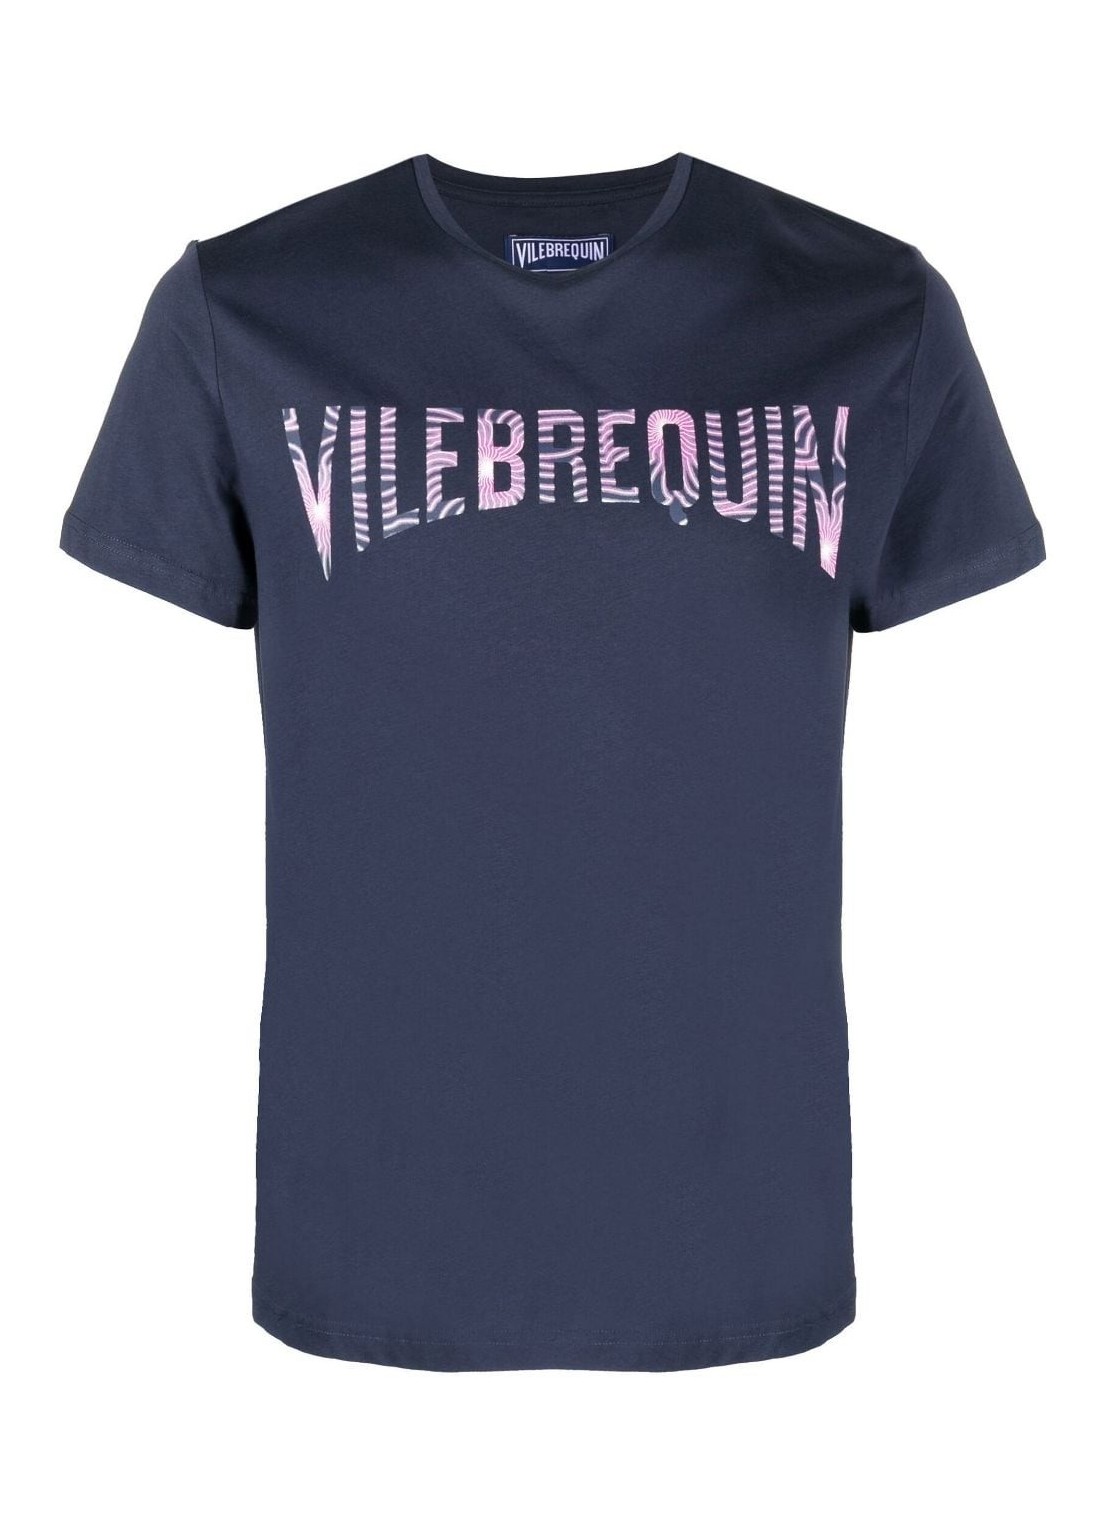 Camiseta vilebrequin t-shirt man thom c3p11 thoc3p11 390 talla M
 